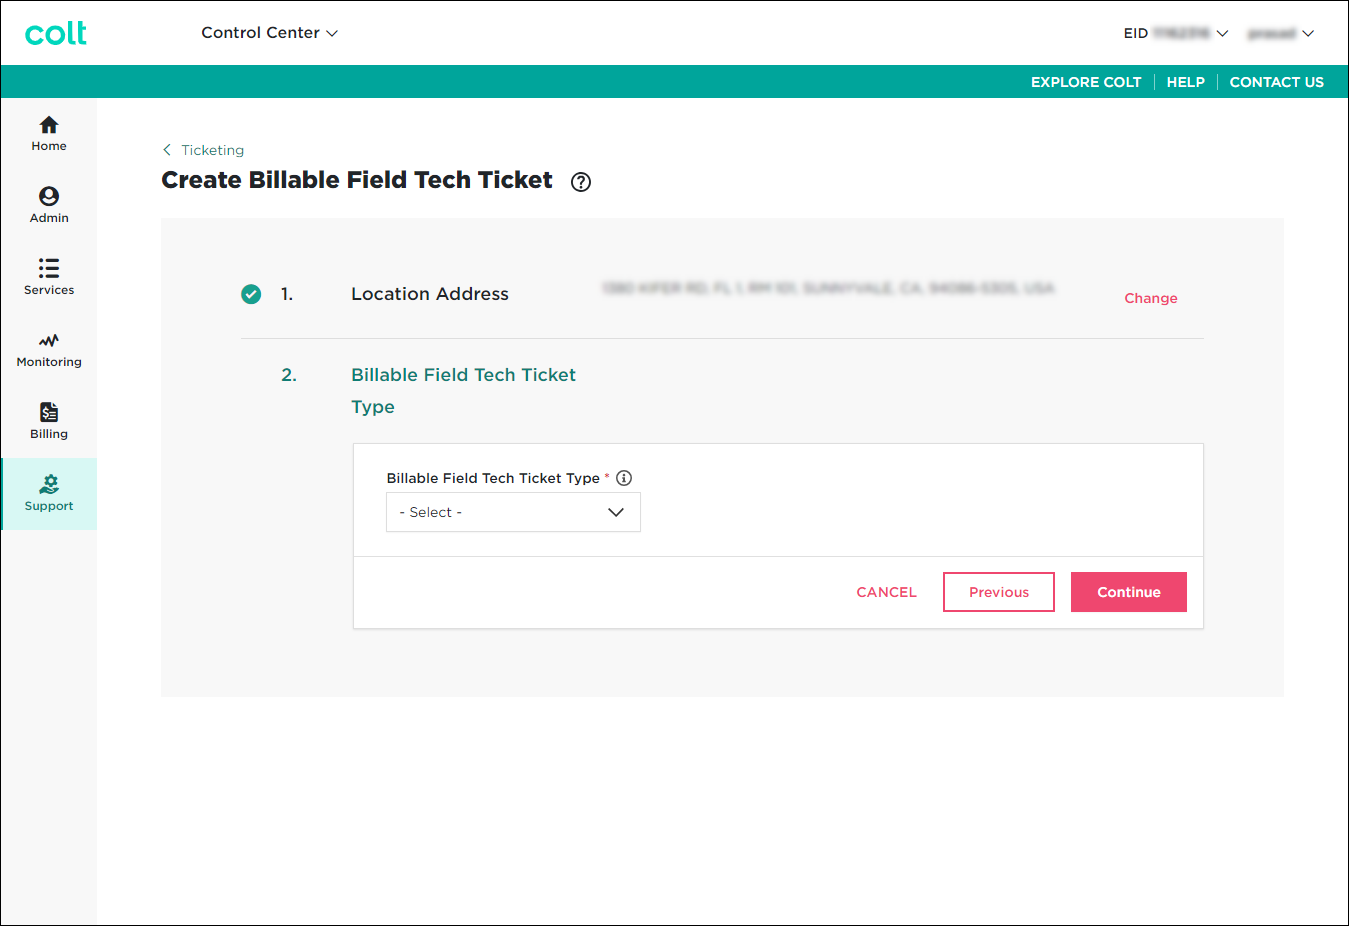 Create Billable Field Tech Ticket (showing Billable Field Tech Ticket Type section)